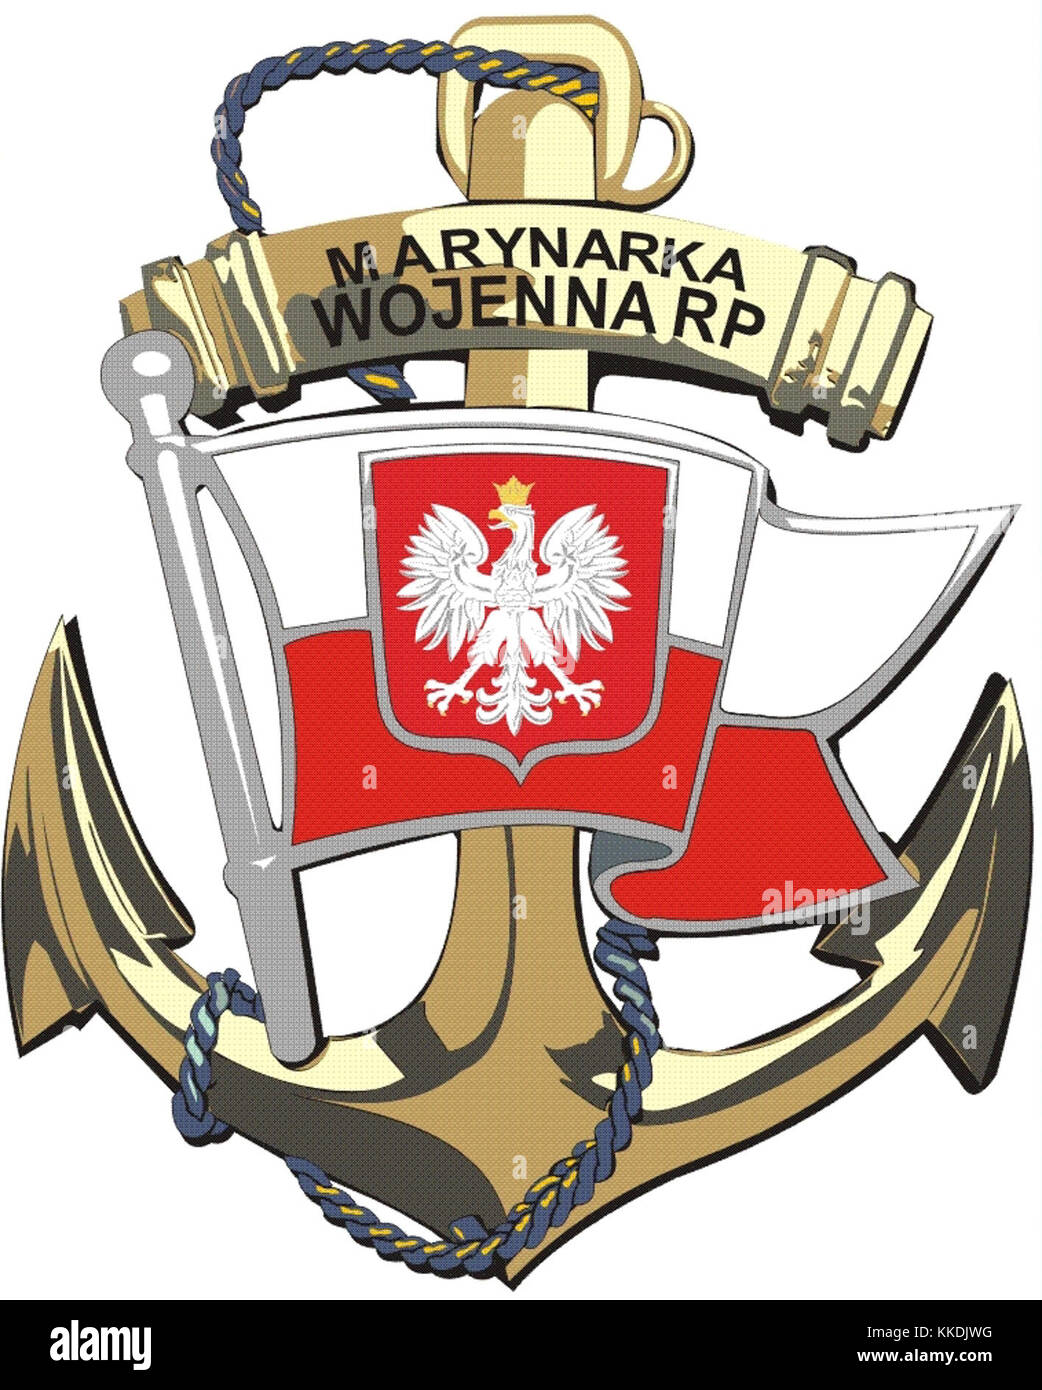 Marynarka Wojenna RP Stock Photo - Alamy